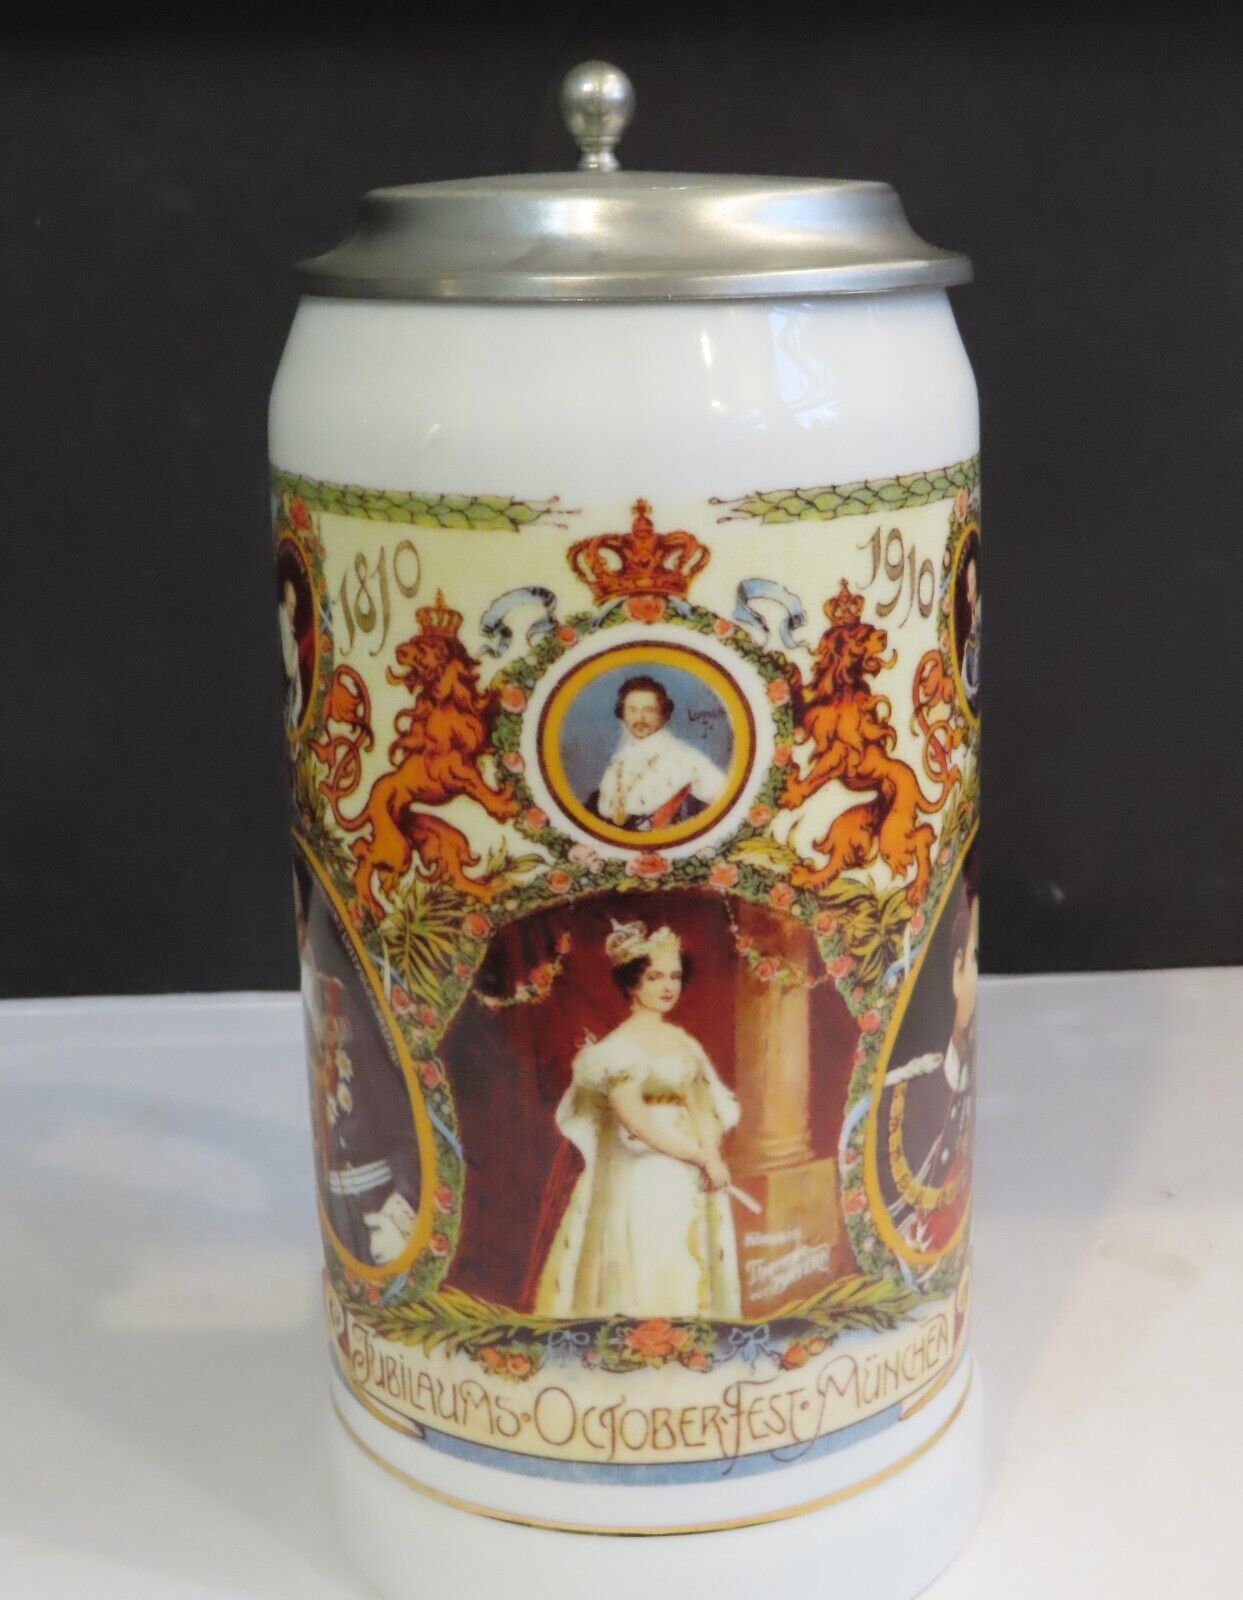 VTG Gerz German Ceramic Porcelain Pewter Lidded Beer Stein 1810-1910 Octoberfest